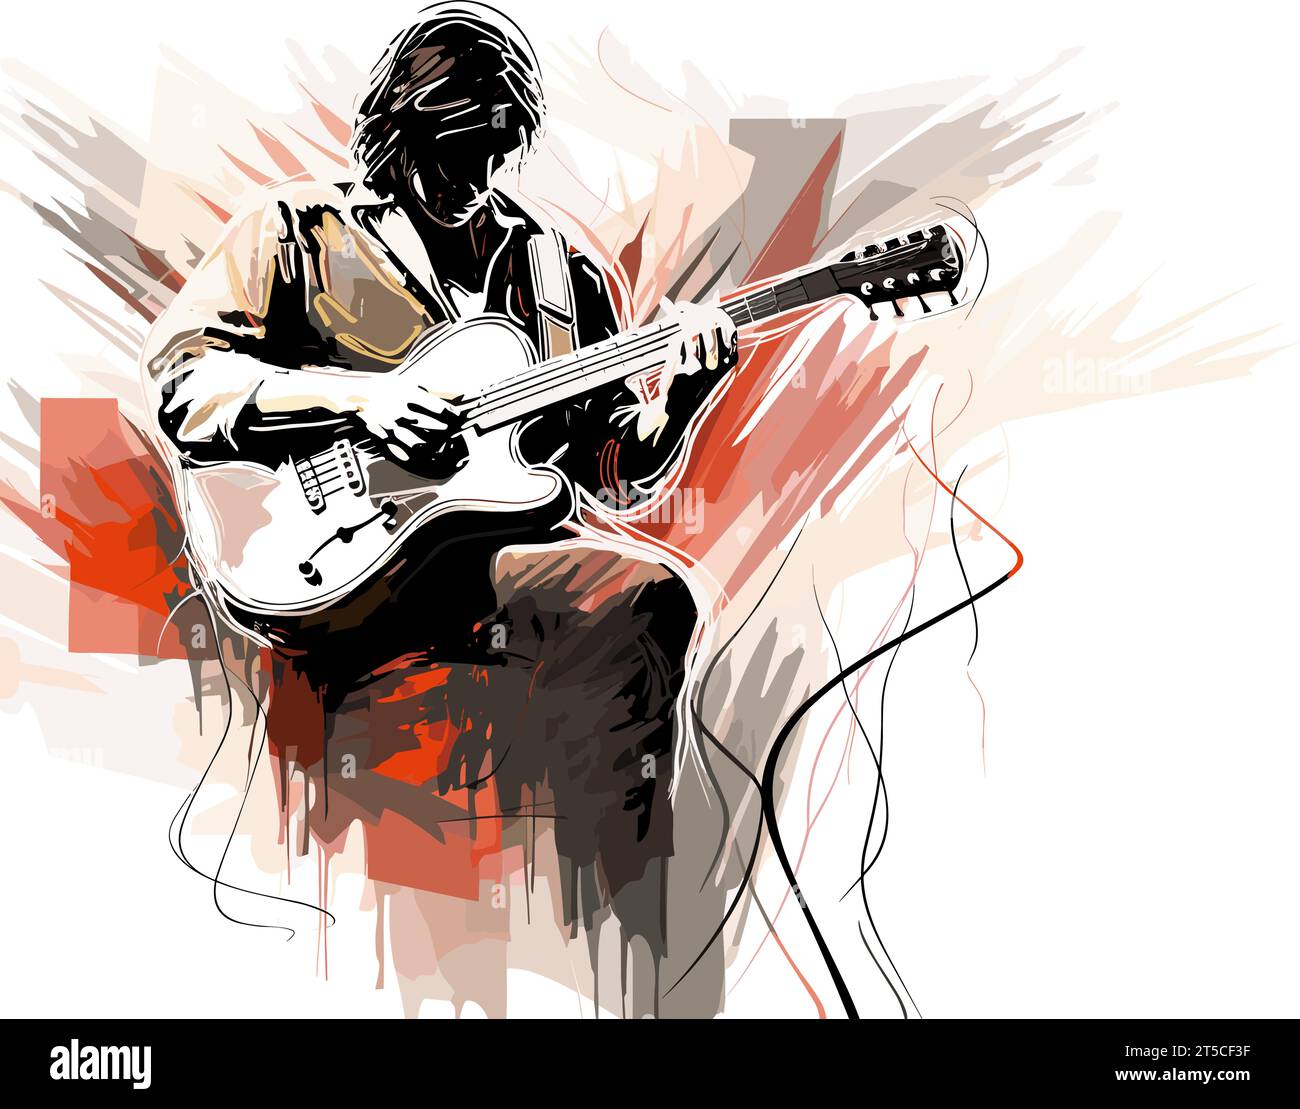 Disegno di musica dal vivo suonatore di chitarra e illustrazione pubblica separate, linee estese e sovradisegnate. Illustrazione Vettoriale